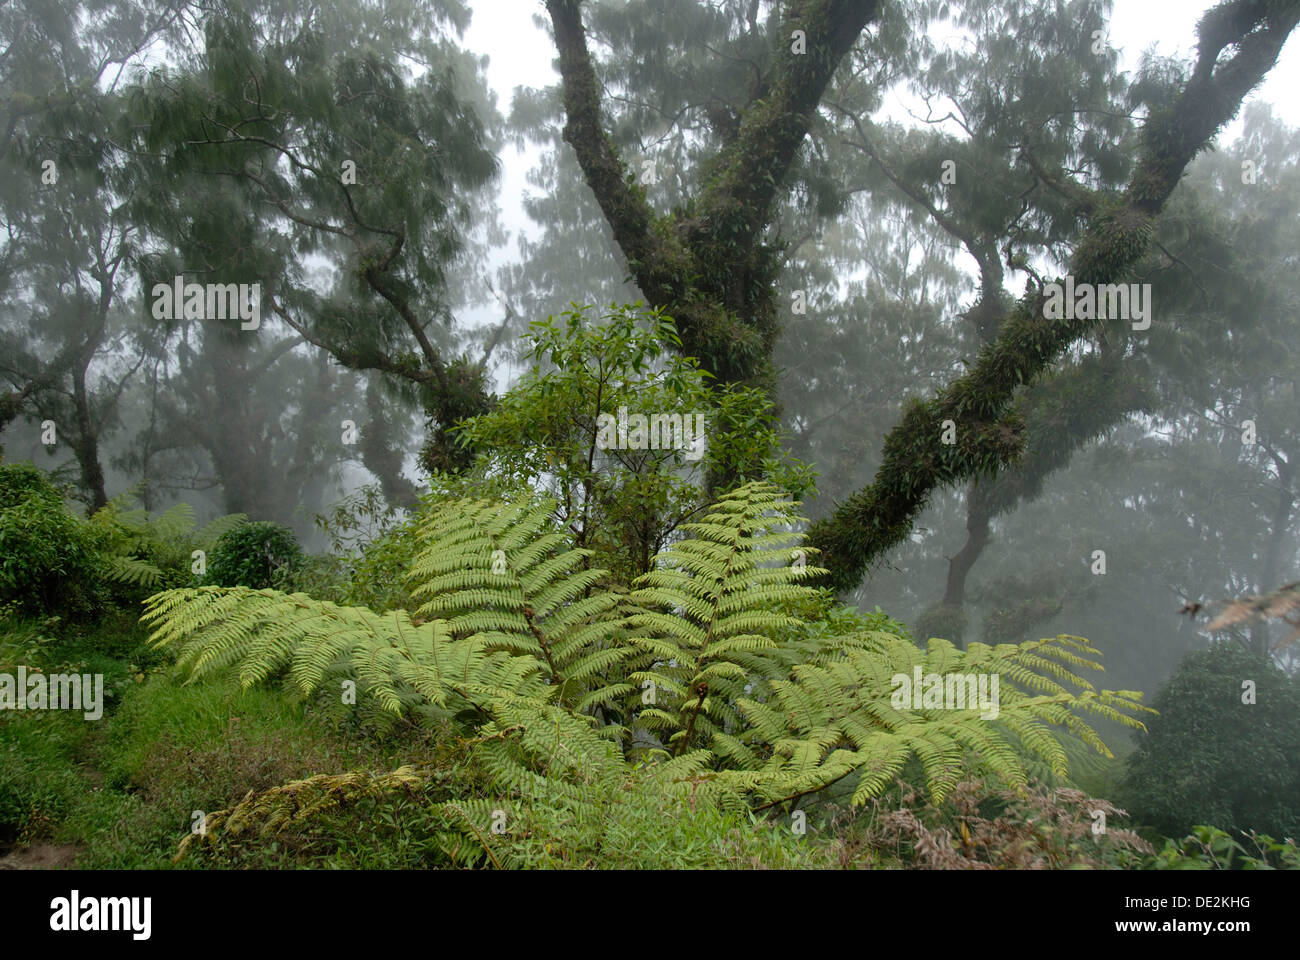 Dschungel, Nebelwald, Nebel, große Farne und Moose alten moosbewachsenen Bäumen im Wald, Berg Gunung Abang, Bali, Indonesien Stockfoto